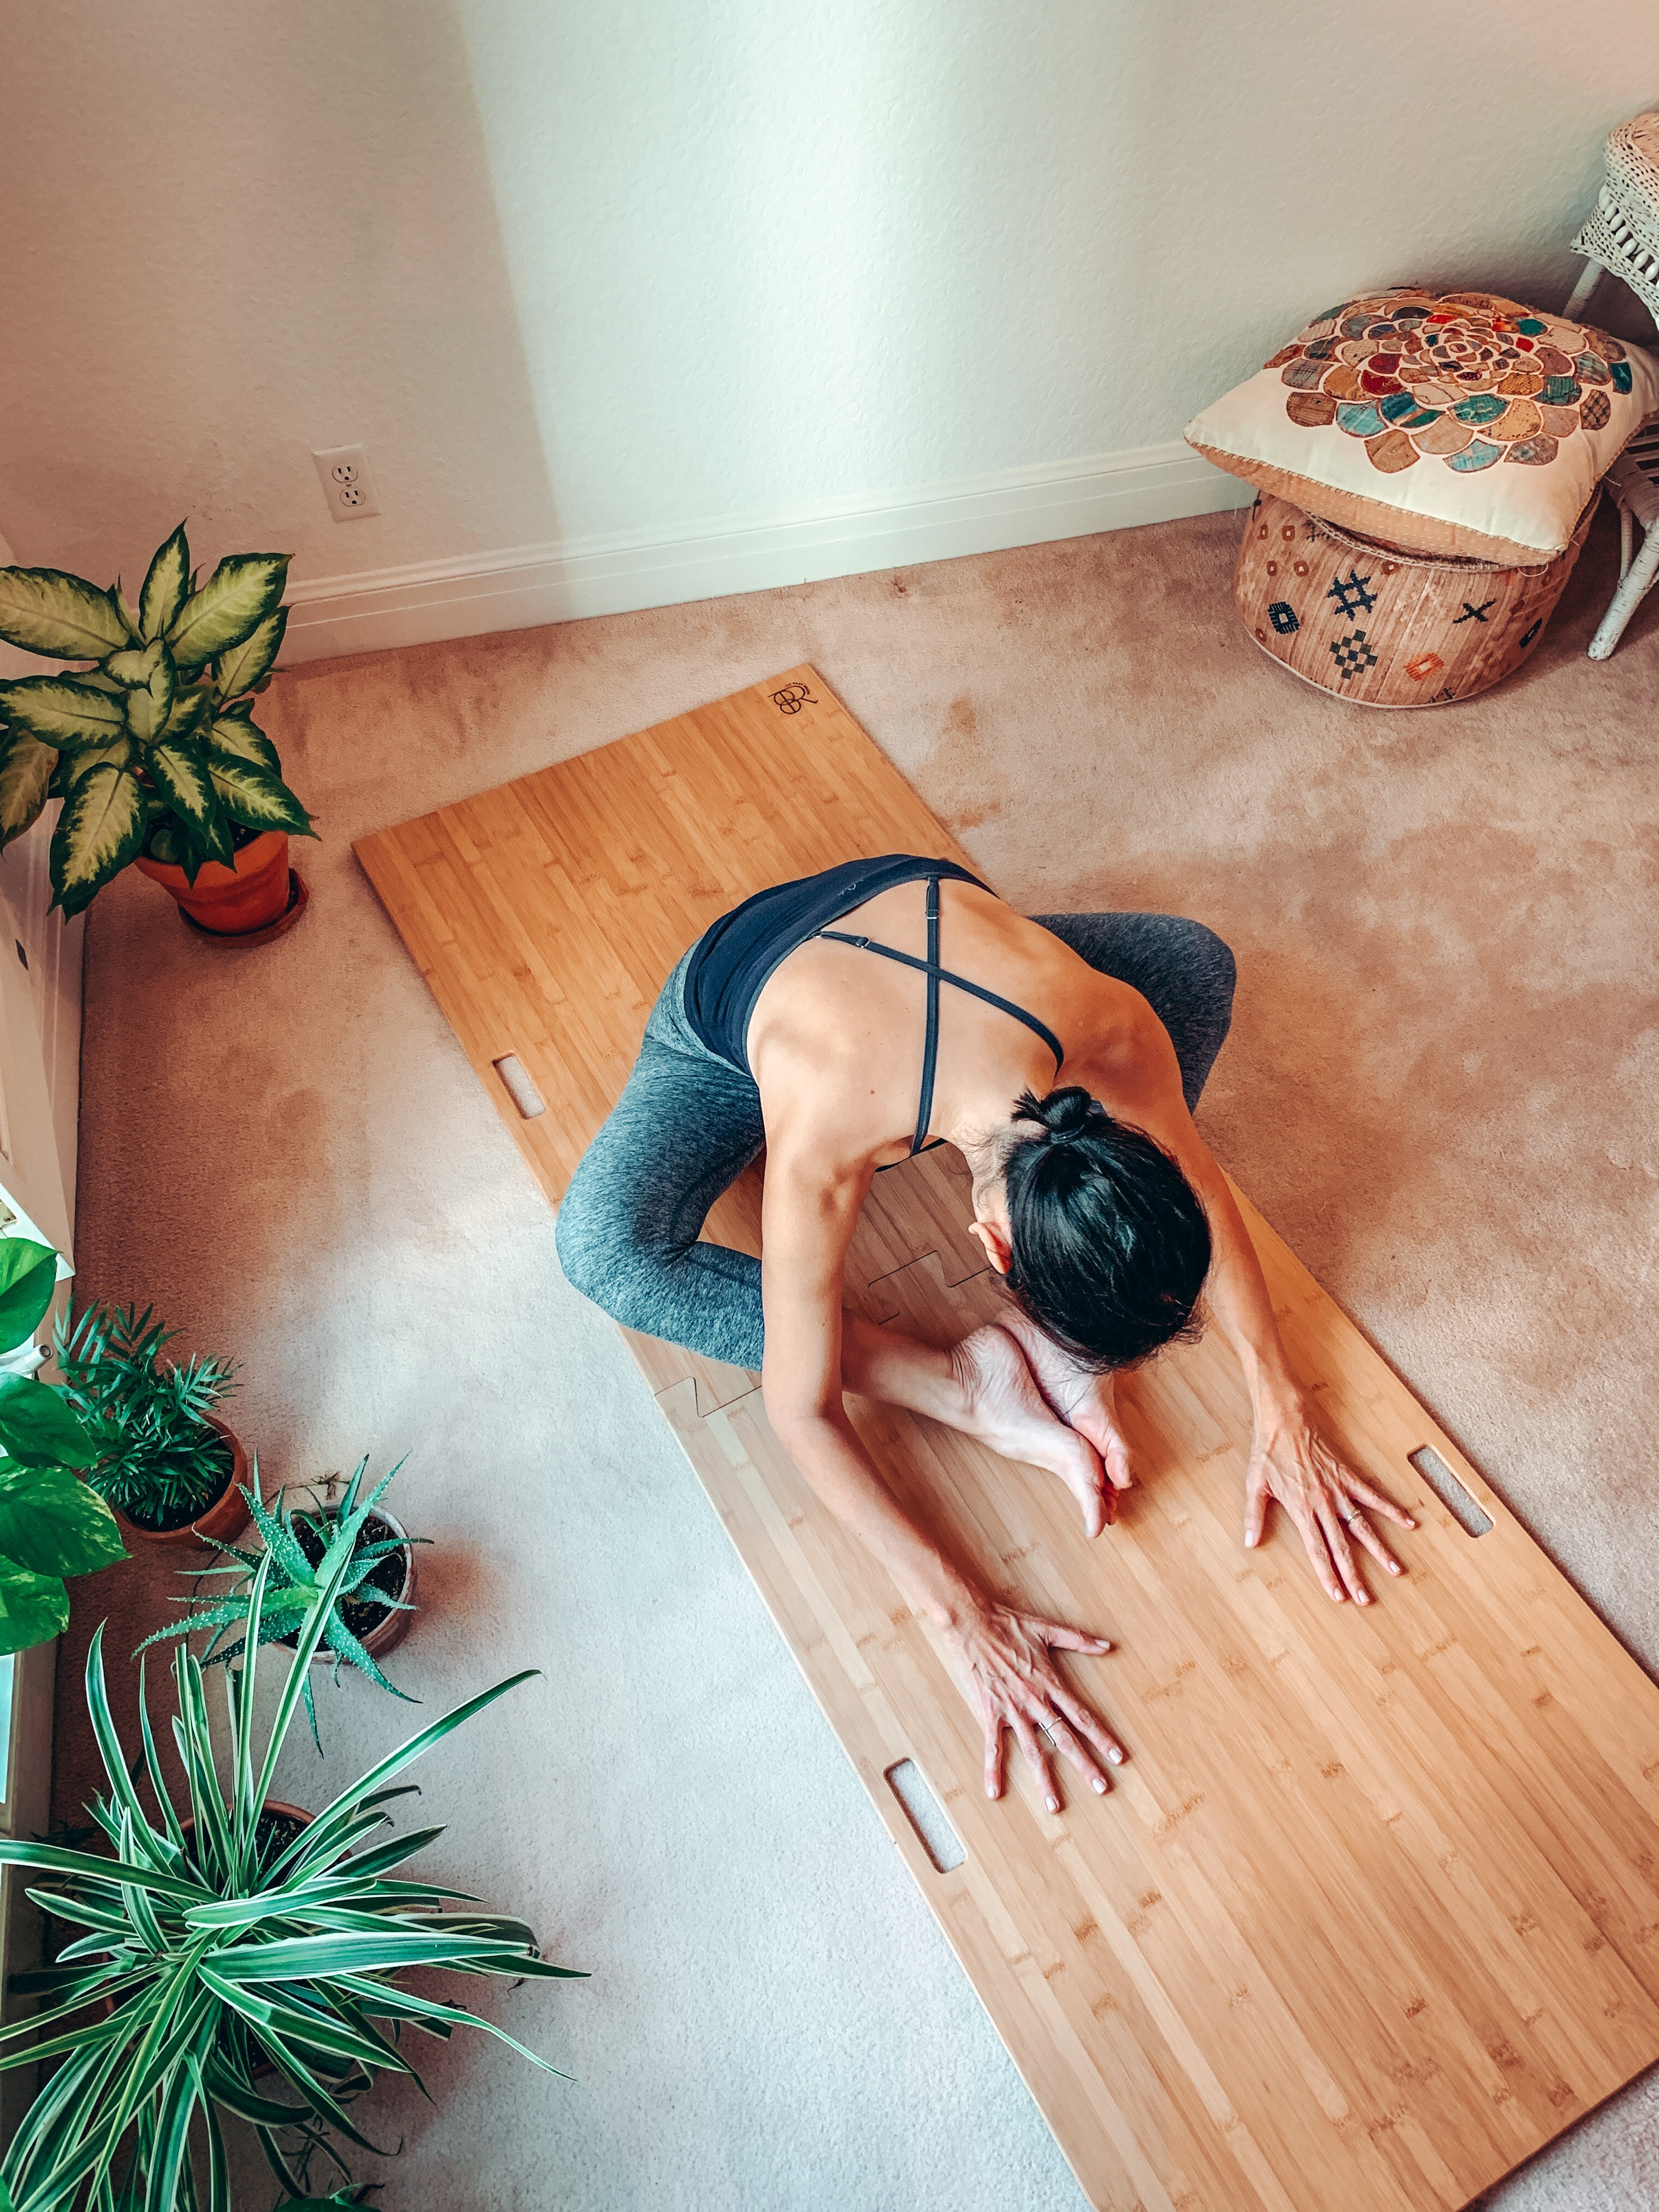 yogi stretches forward on a portable yoga platform